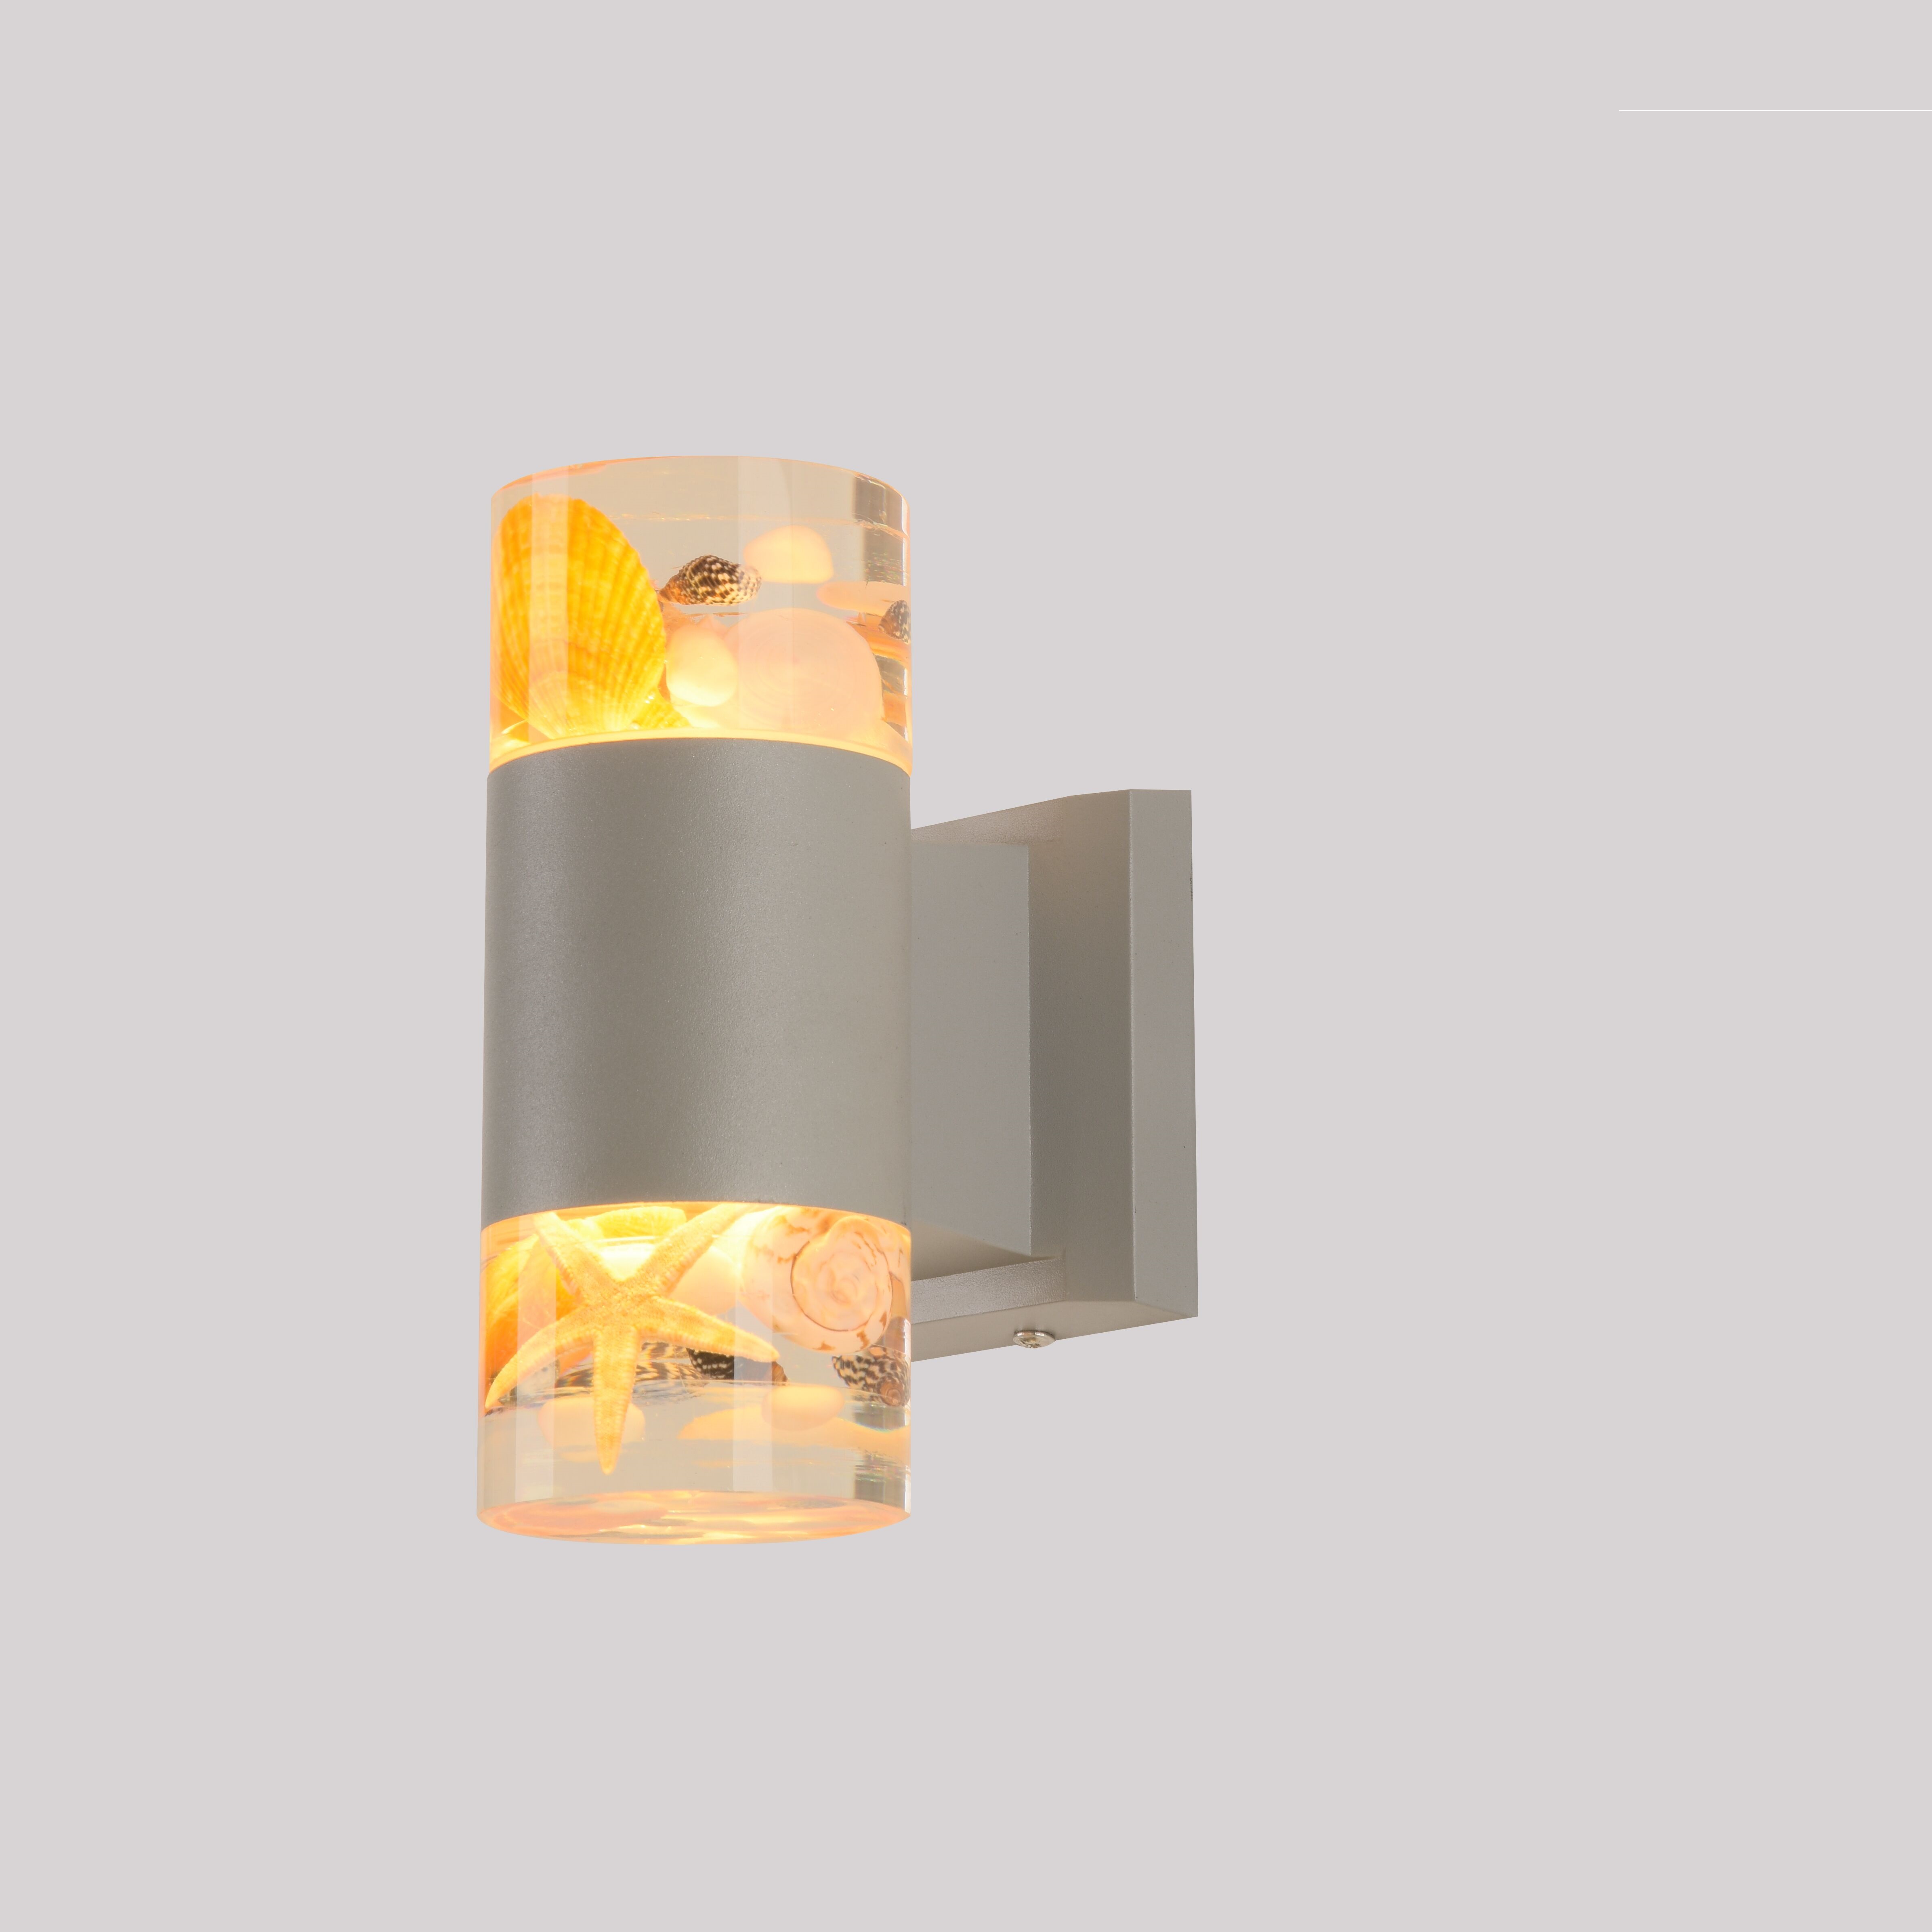 903-2 Wall Lamp